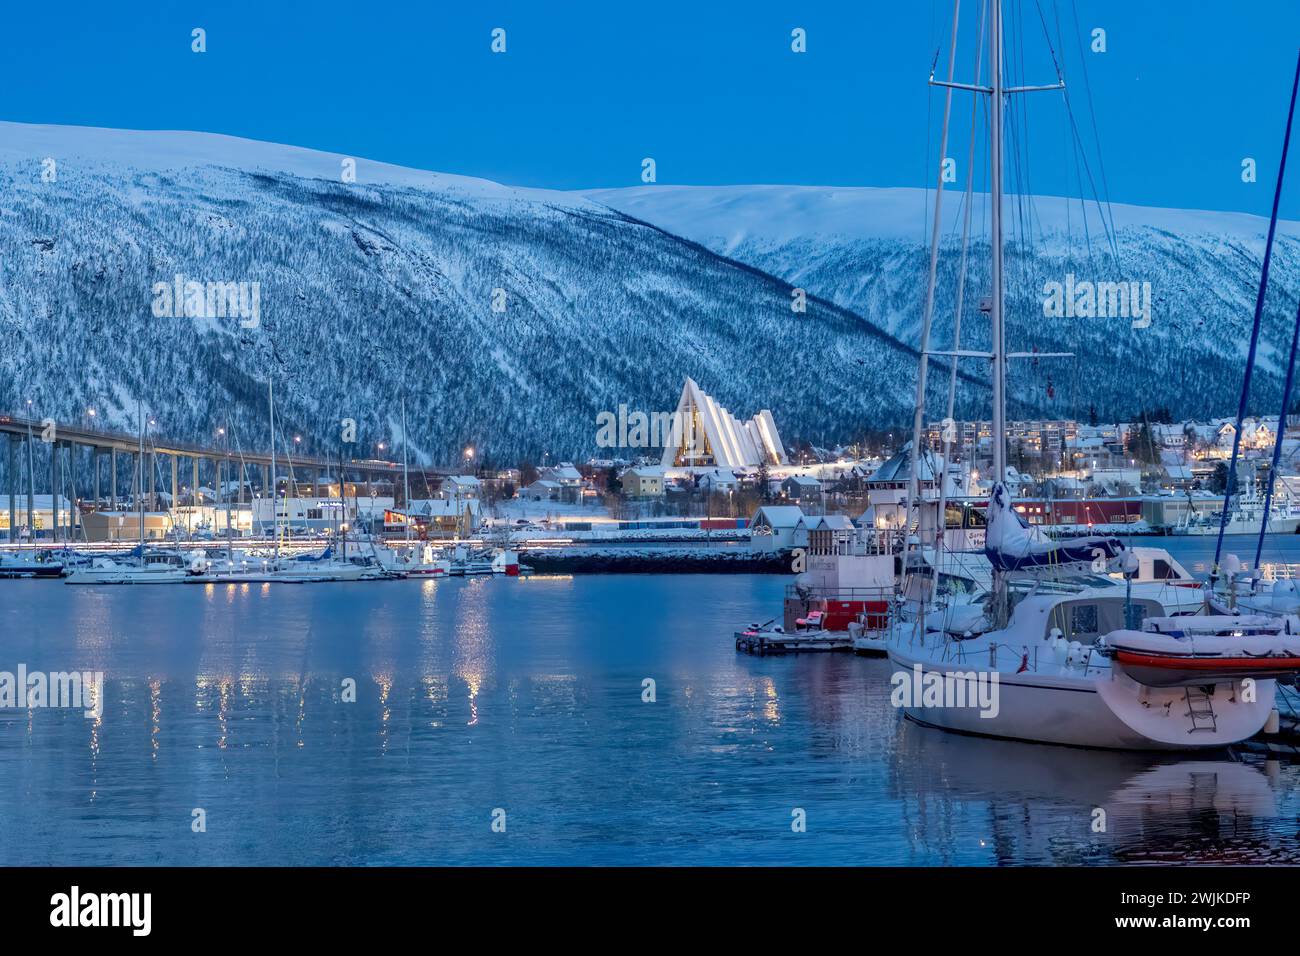 Vue de la cathédrale arctique au crépuscule à Tromso, Norvège Banque D'Images